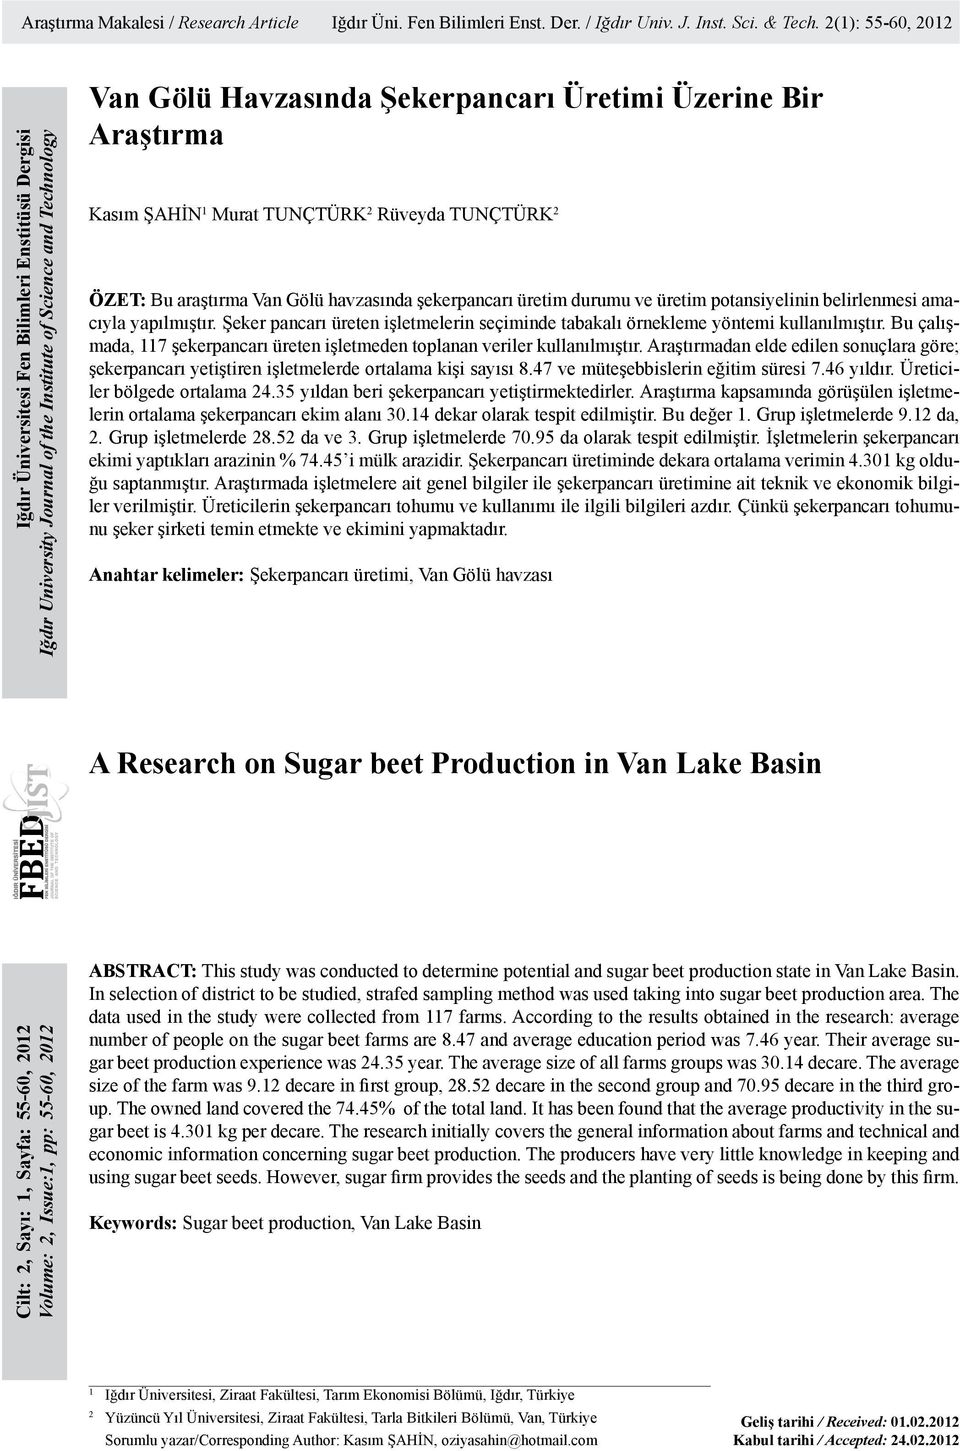 Kasım ŞAHİN 1 Murat TUNÇTÜRK 2 Rüveyda TUNÇTÜRK 2 ÖZET: Bu araştırma Van Gölü havzasında şekerpancarı üretim durumu ve üretim potansiyelinin belirlenmesi amacıyla yapılmıştır.